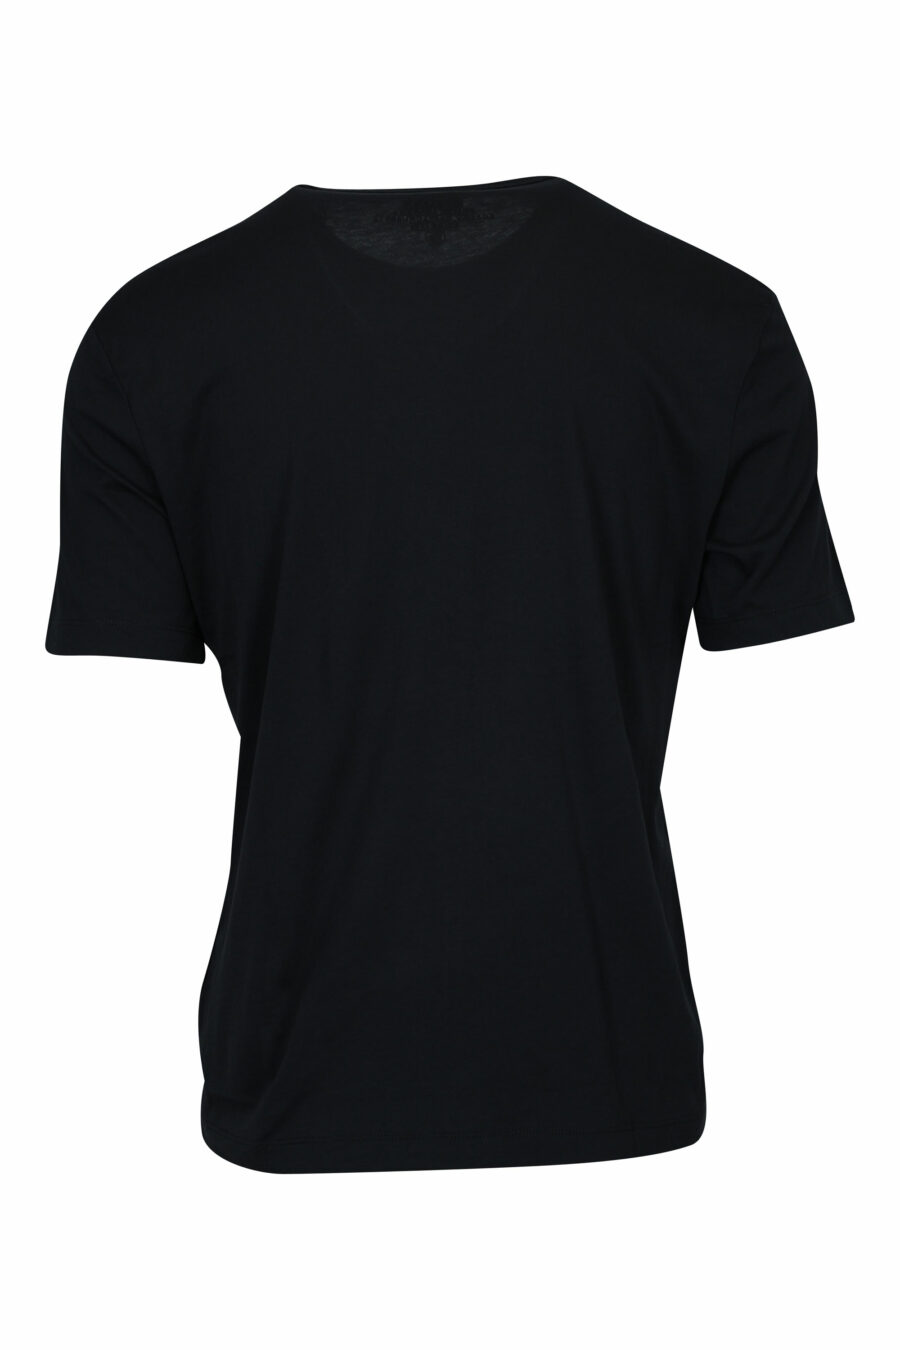 Schwarzes T-Shirt mit quadratischem "Spray"-Logo - 8058610800086 1